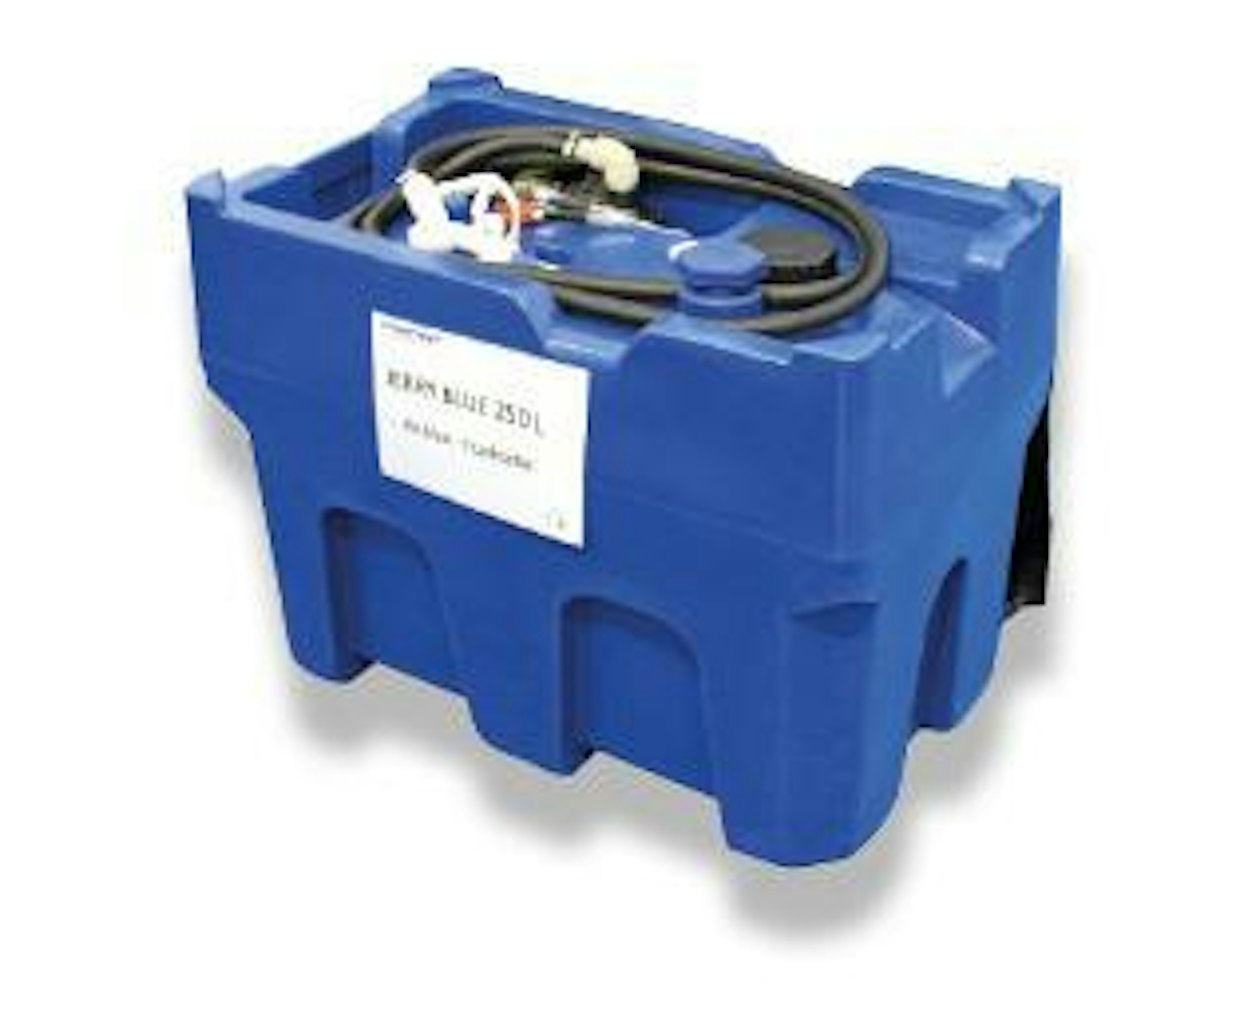 Finncontin Blue Jerry 250 on AdBlue-liuoksen varastointiin ja kuljettamiseen tehty säiliö. Samanlainen 250-litrainen säiliö on saatavilla myös polttoaineen kuljetukseen. Verollinen hinta liikkuu 600 euron tuntumassa. (MS)